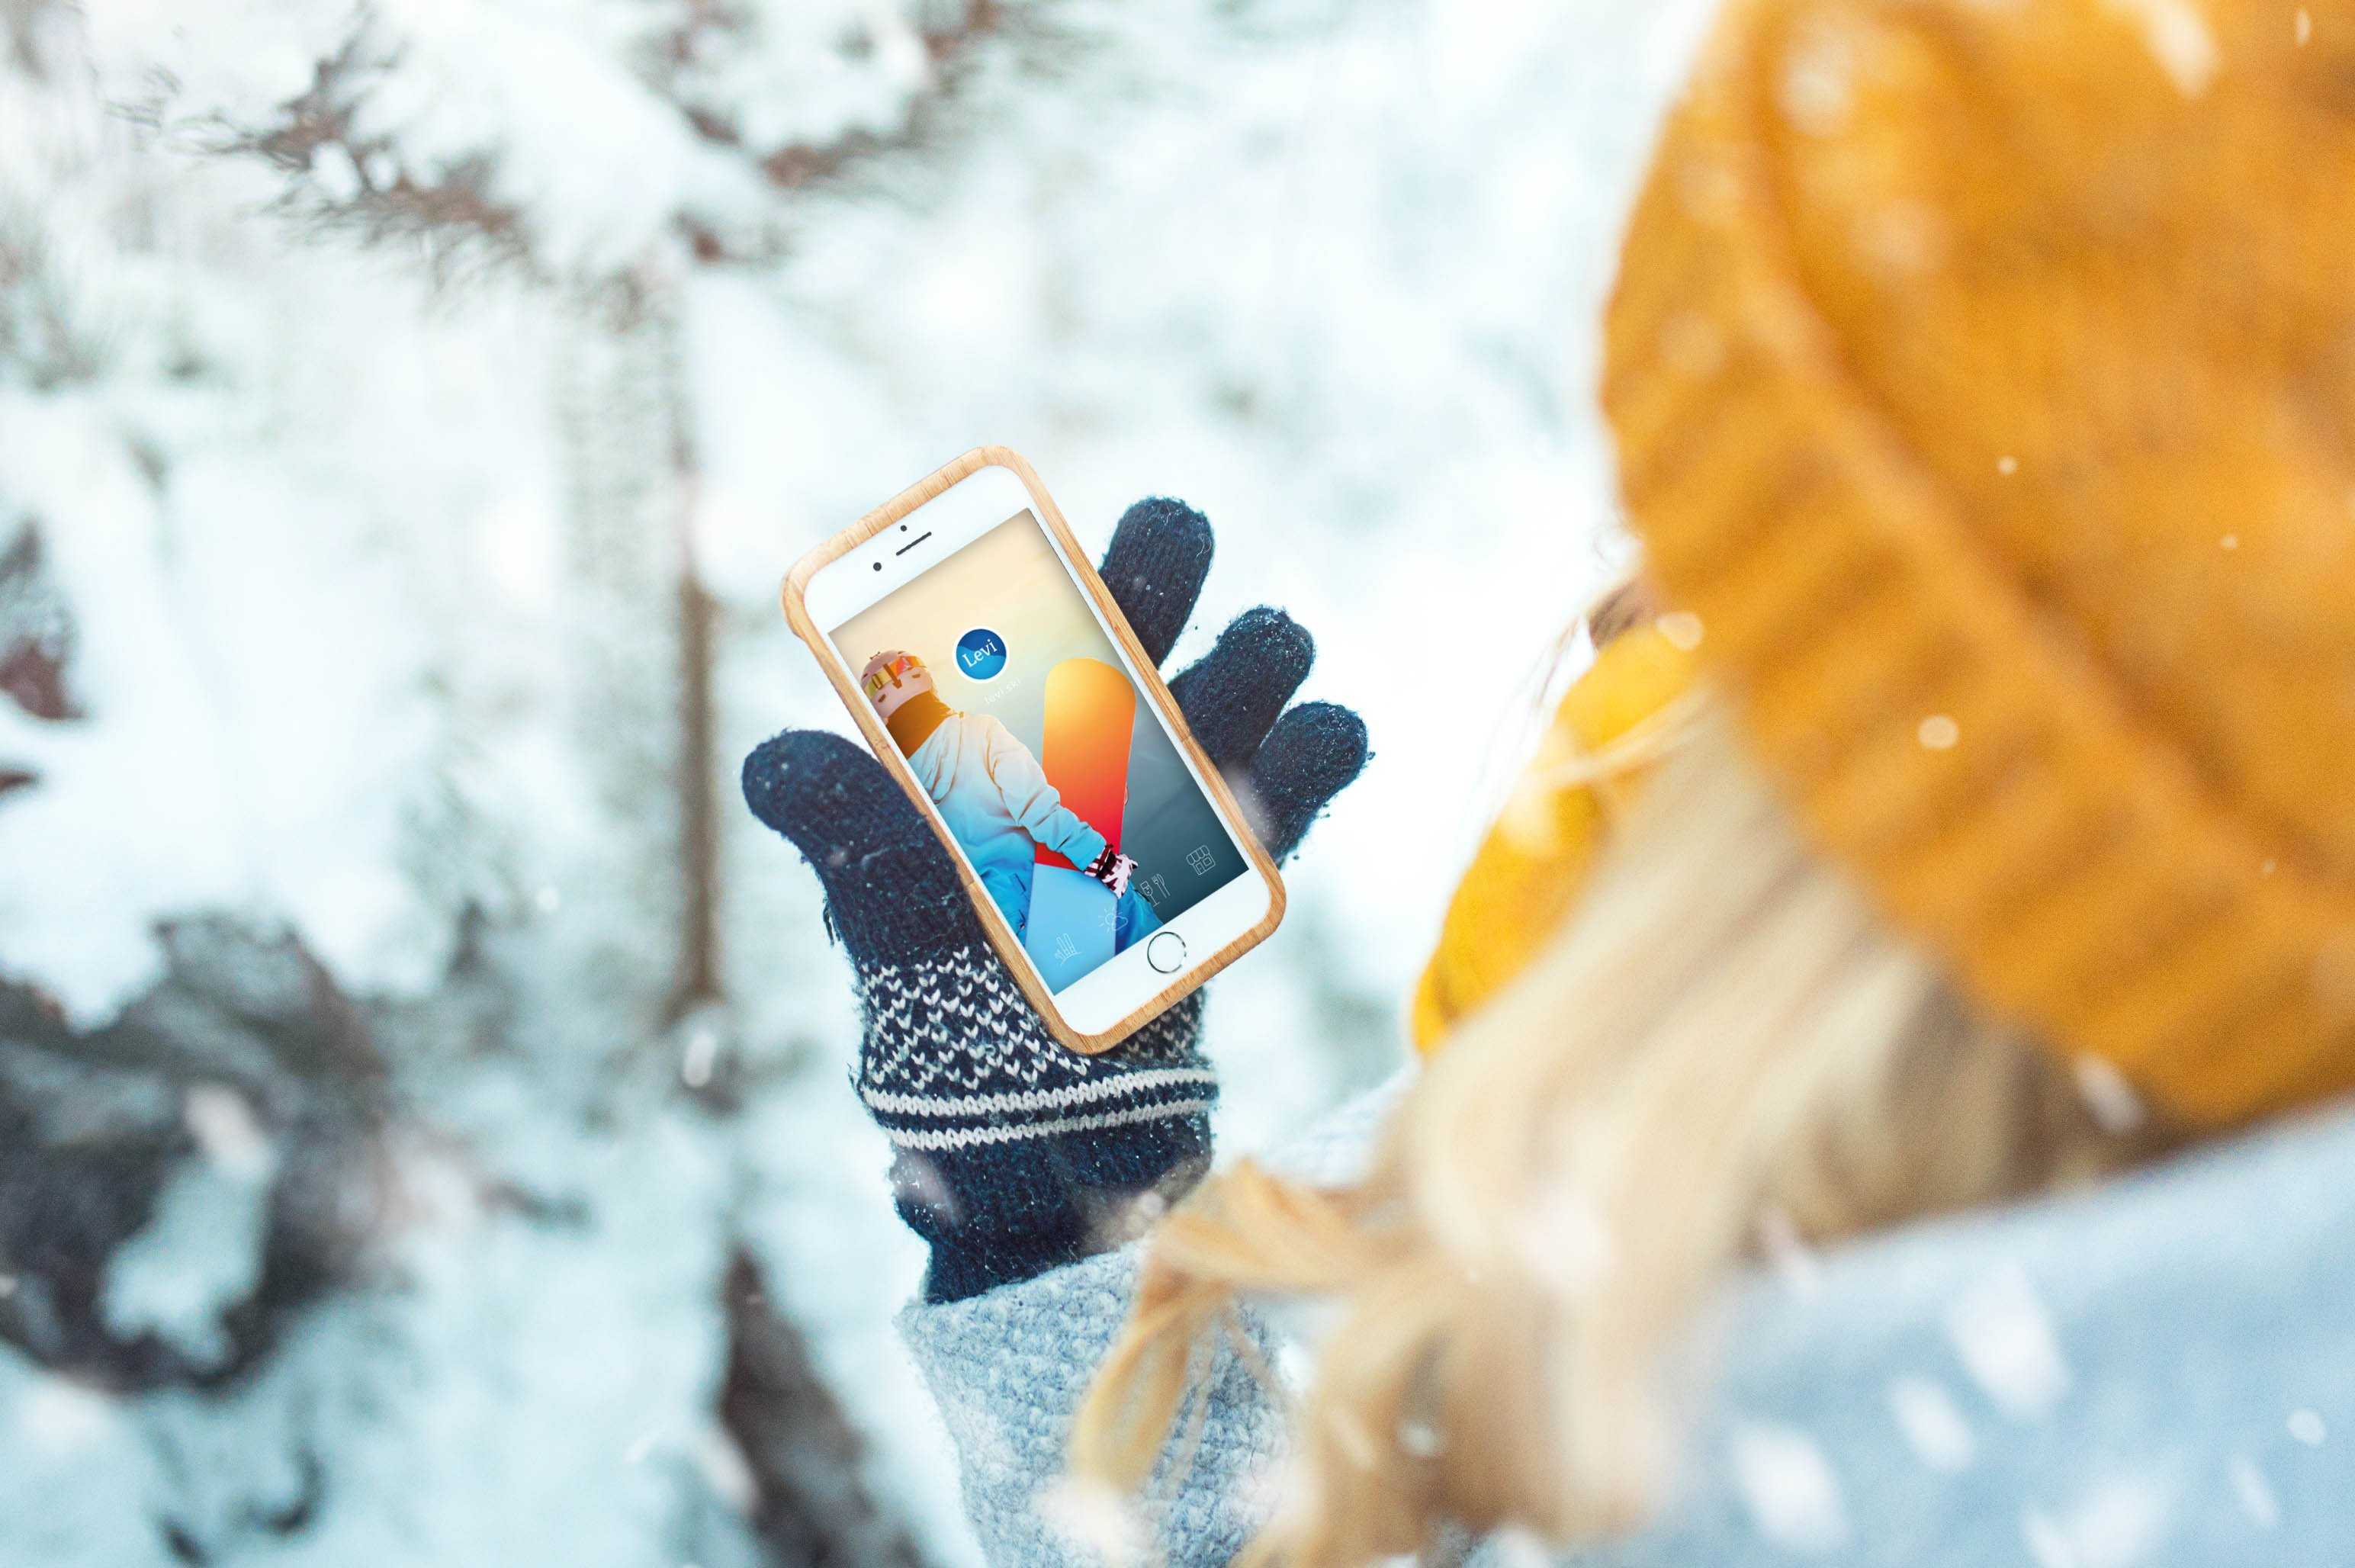 Снимки смартфоном зимой – как создавать отличные фото